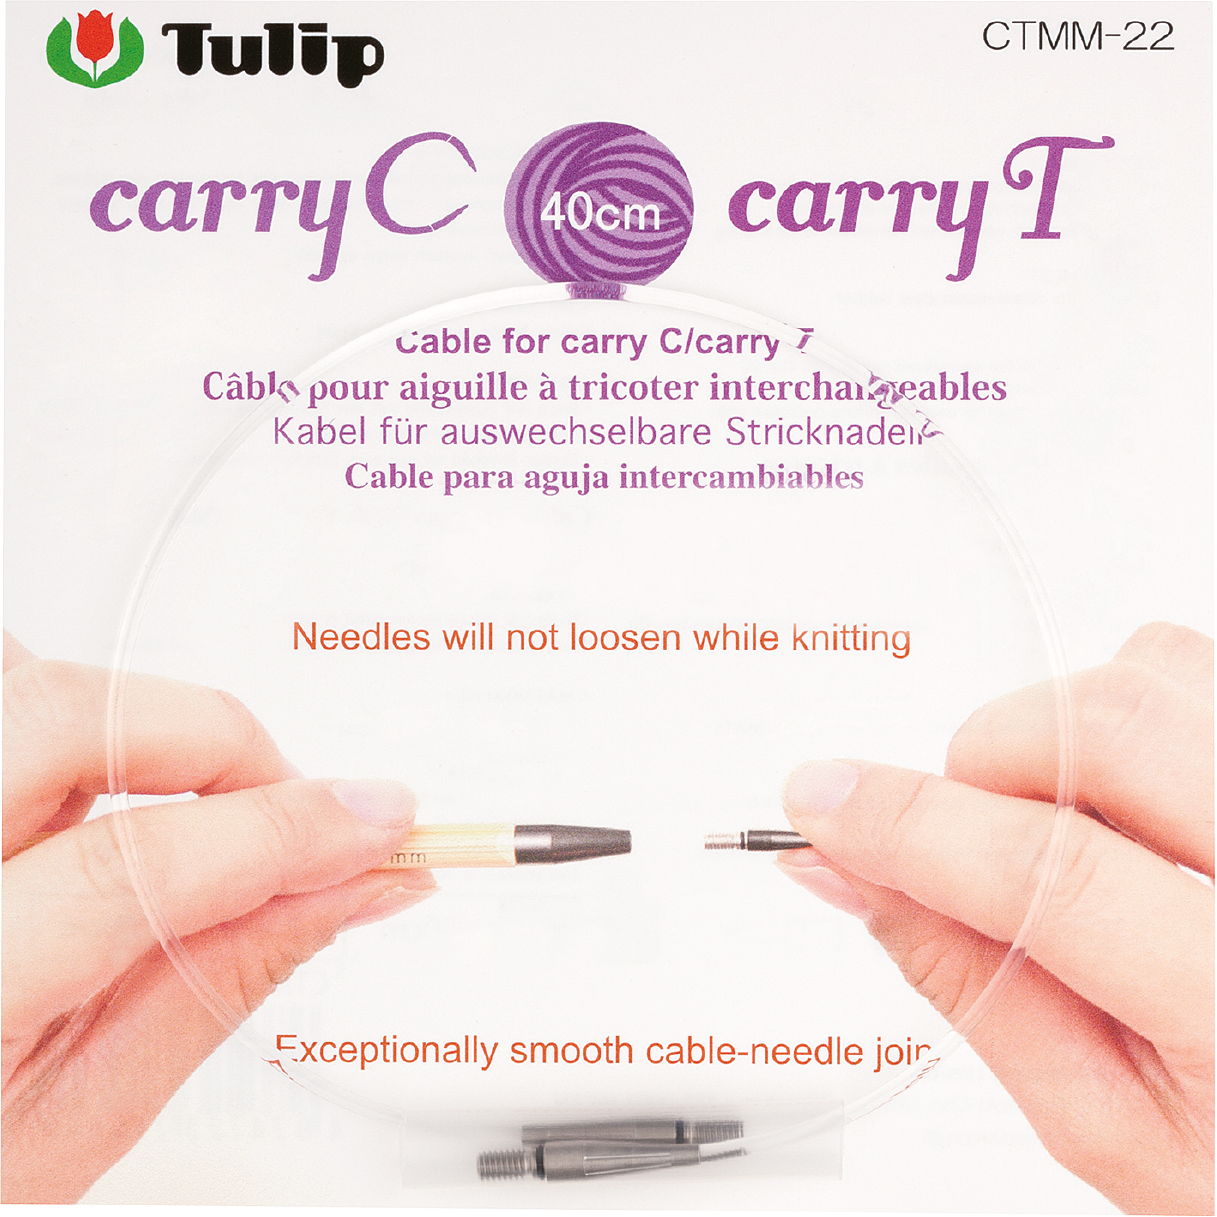 Tulip Kabel für carryC/carryT 40 cm